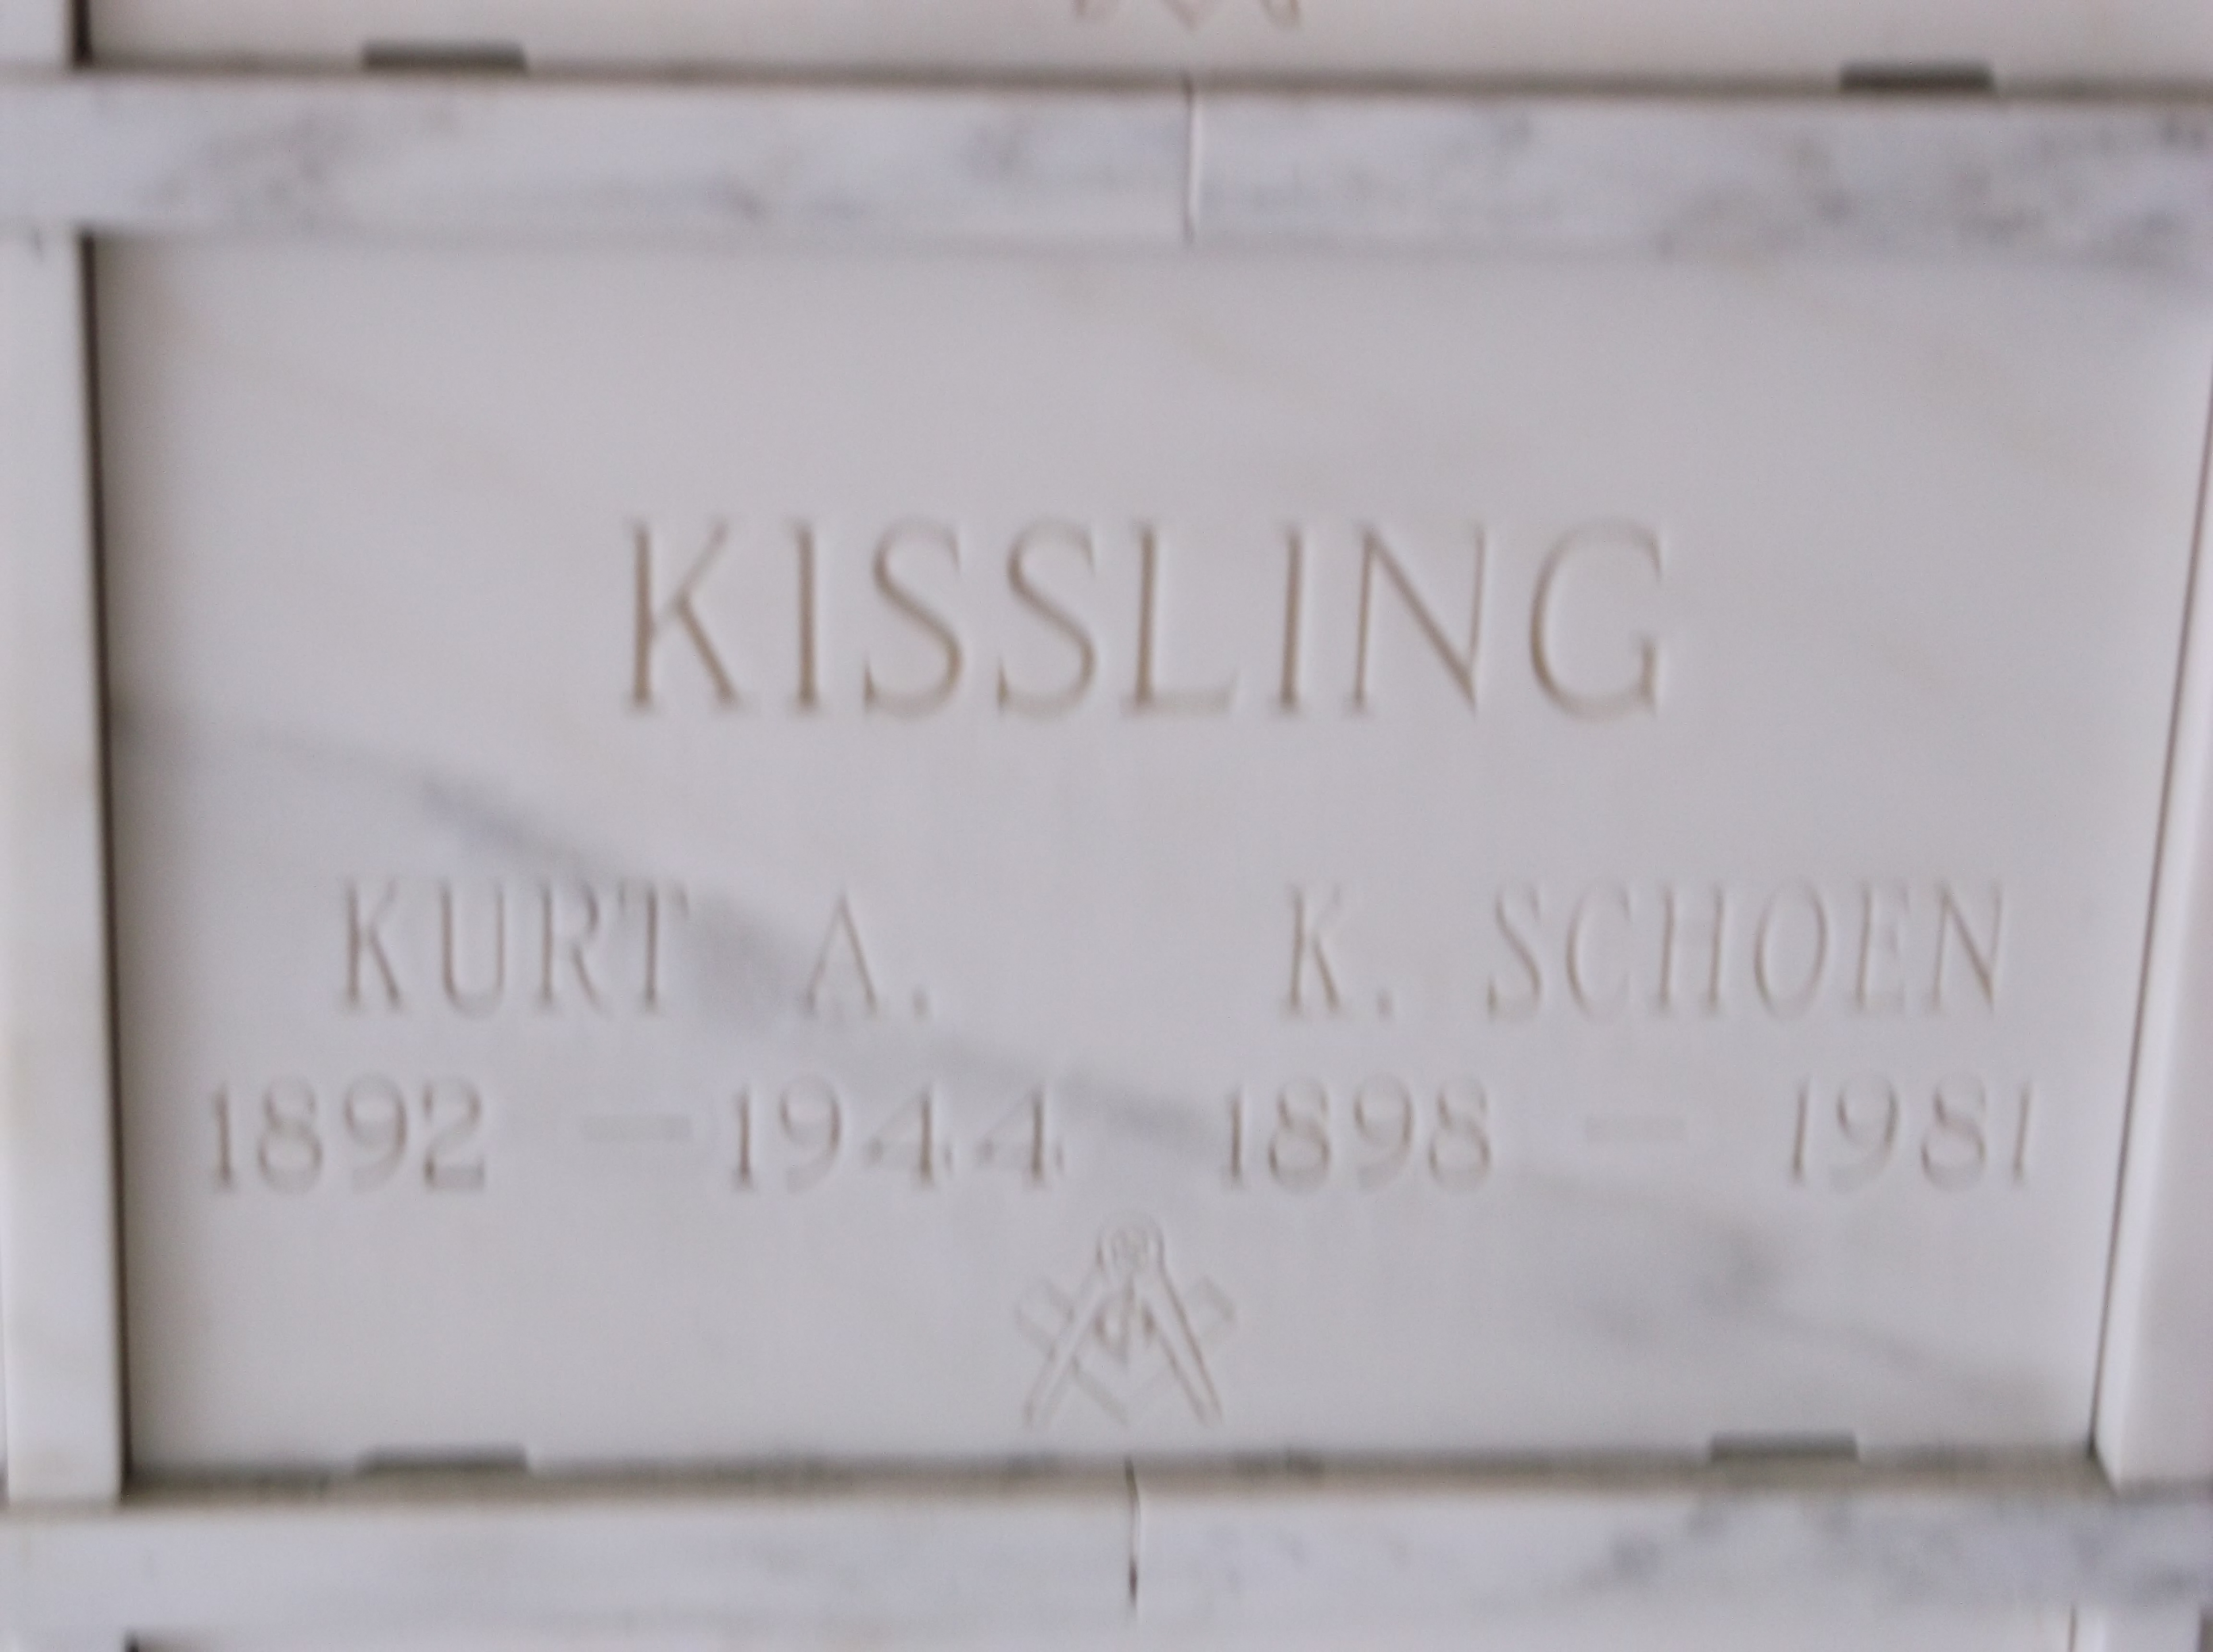 K Schoen Kissling